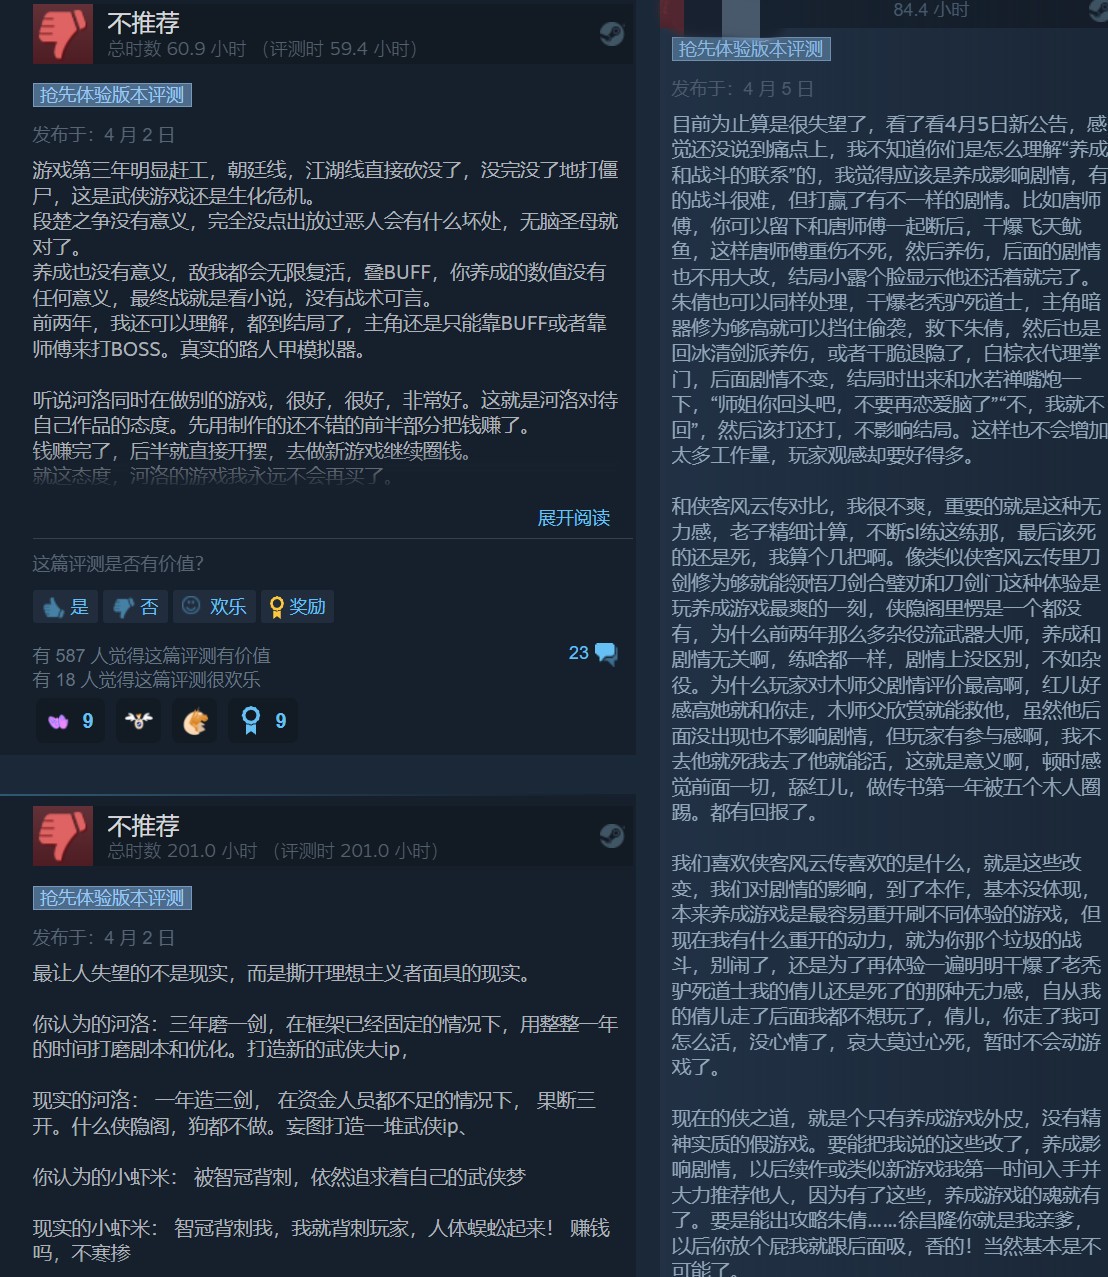 《俠之道》第三年更新翻車 Steam出現大量差評、官方做出回應